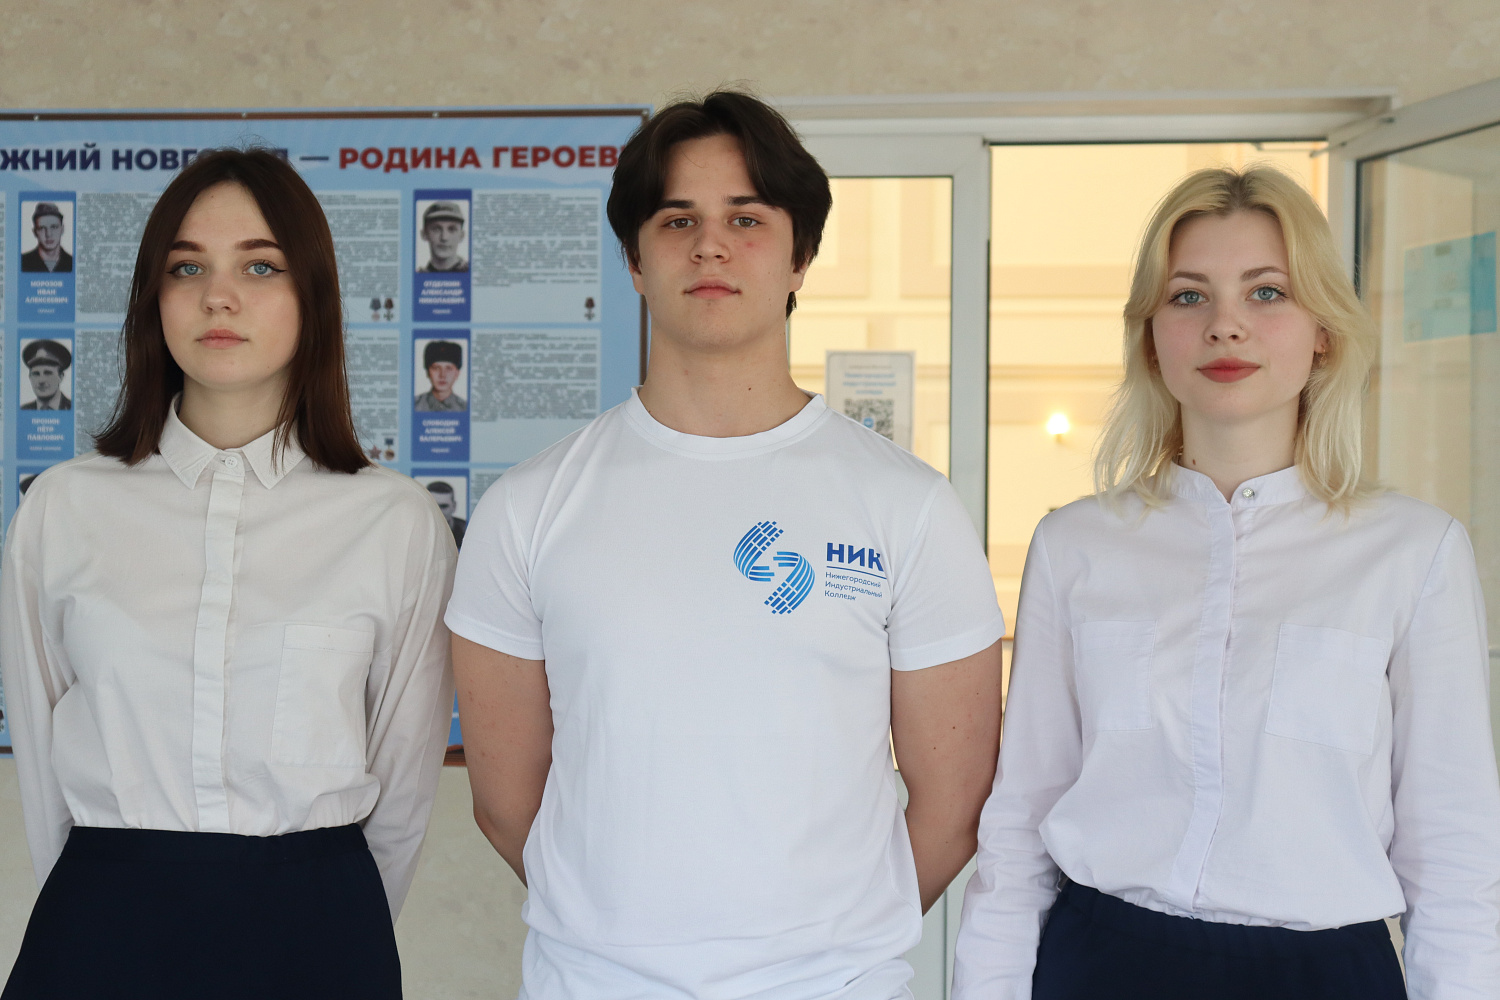 Открытие учебного класса в Нижнем Новгороде: новые перспективы для молодых специалистов